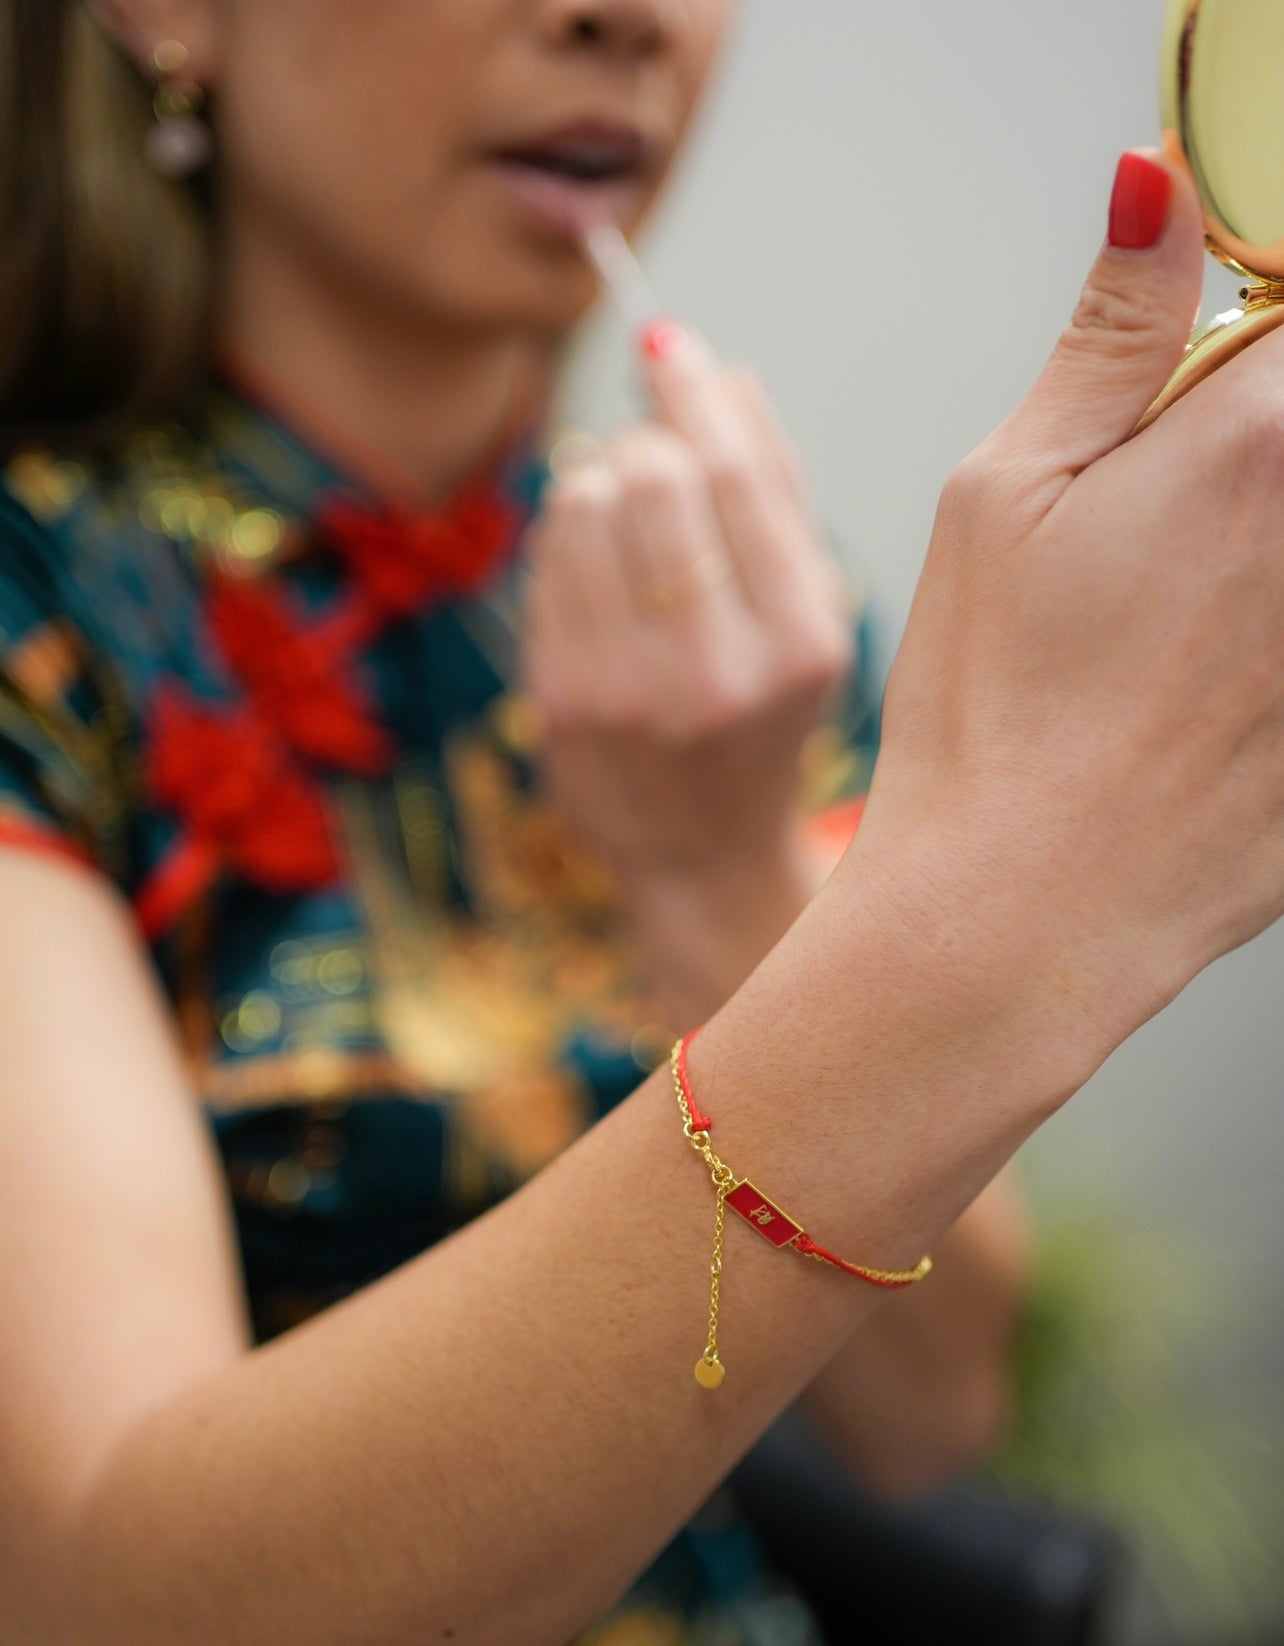 Buy Good Luck Bracelet Red String Bracelet Red Bracelet for Online in India   Etsy